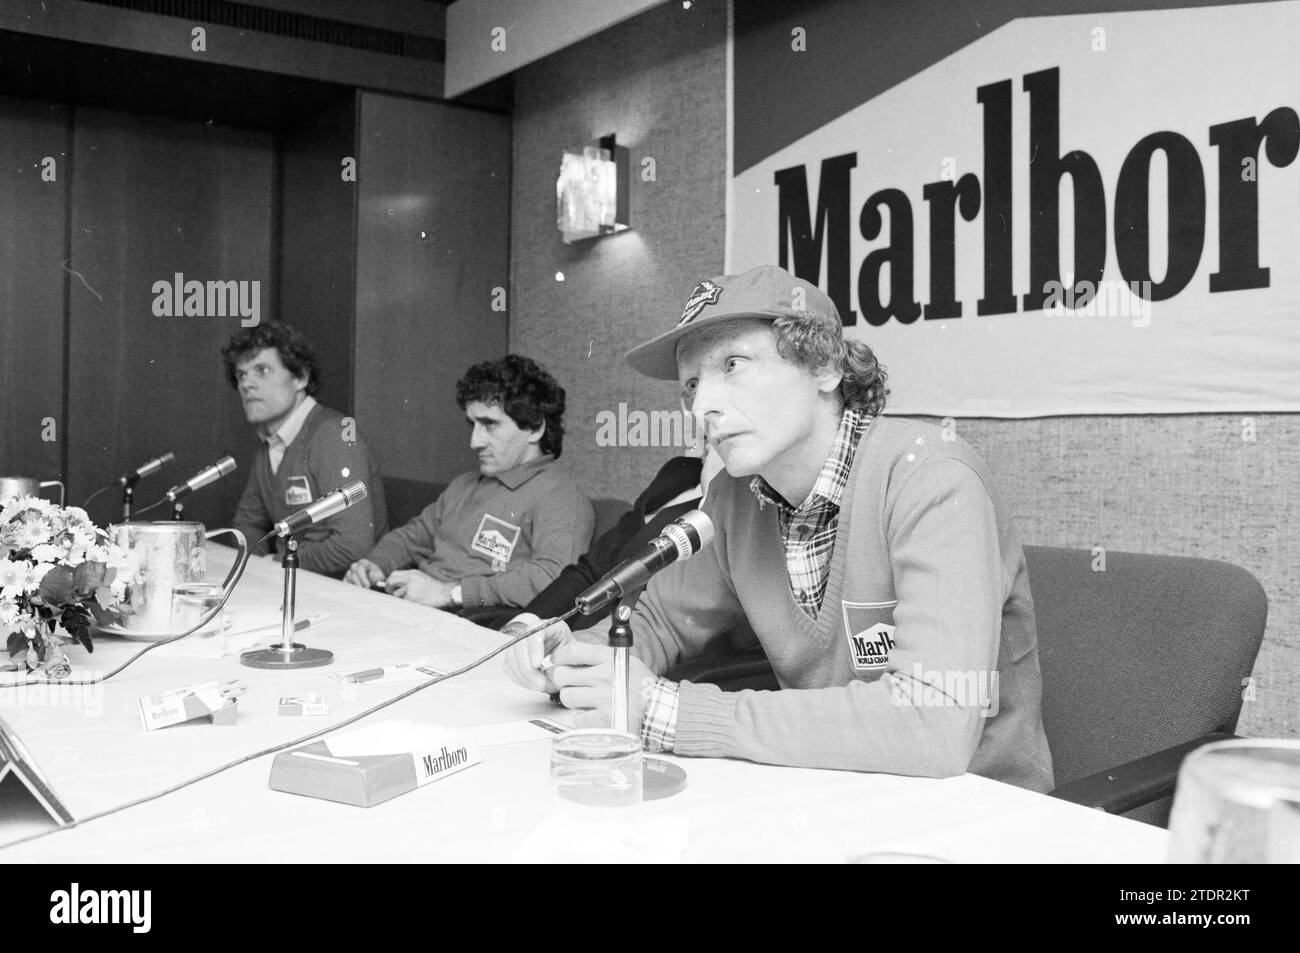 Bericht mit Formel-1-Fahrern Niki Lauda und Alain Prost, 00-00-1984, Whizgle News aus der Vergangenheit, maßgeschneidert für die Zukunft. Erkunden Sie historische Geschichten, das Image der niederländischen Agentur aus einer modernen Perspektive, die die Lücke zwischen den Ereignissen von gestern und den Erkenntnissen von morgen überbrückt. Eine zeitlose Reise, die die Geschichten prägt, die unsere Zukunft prägen Stockfoto